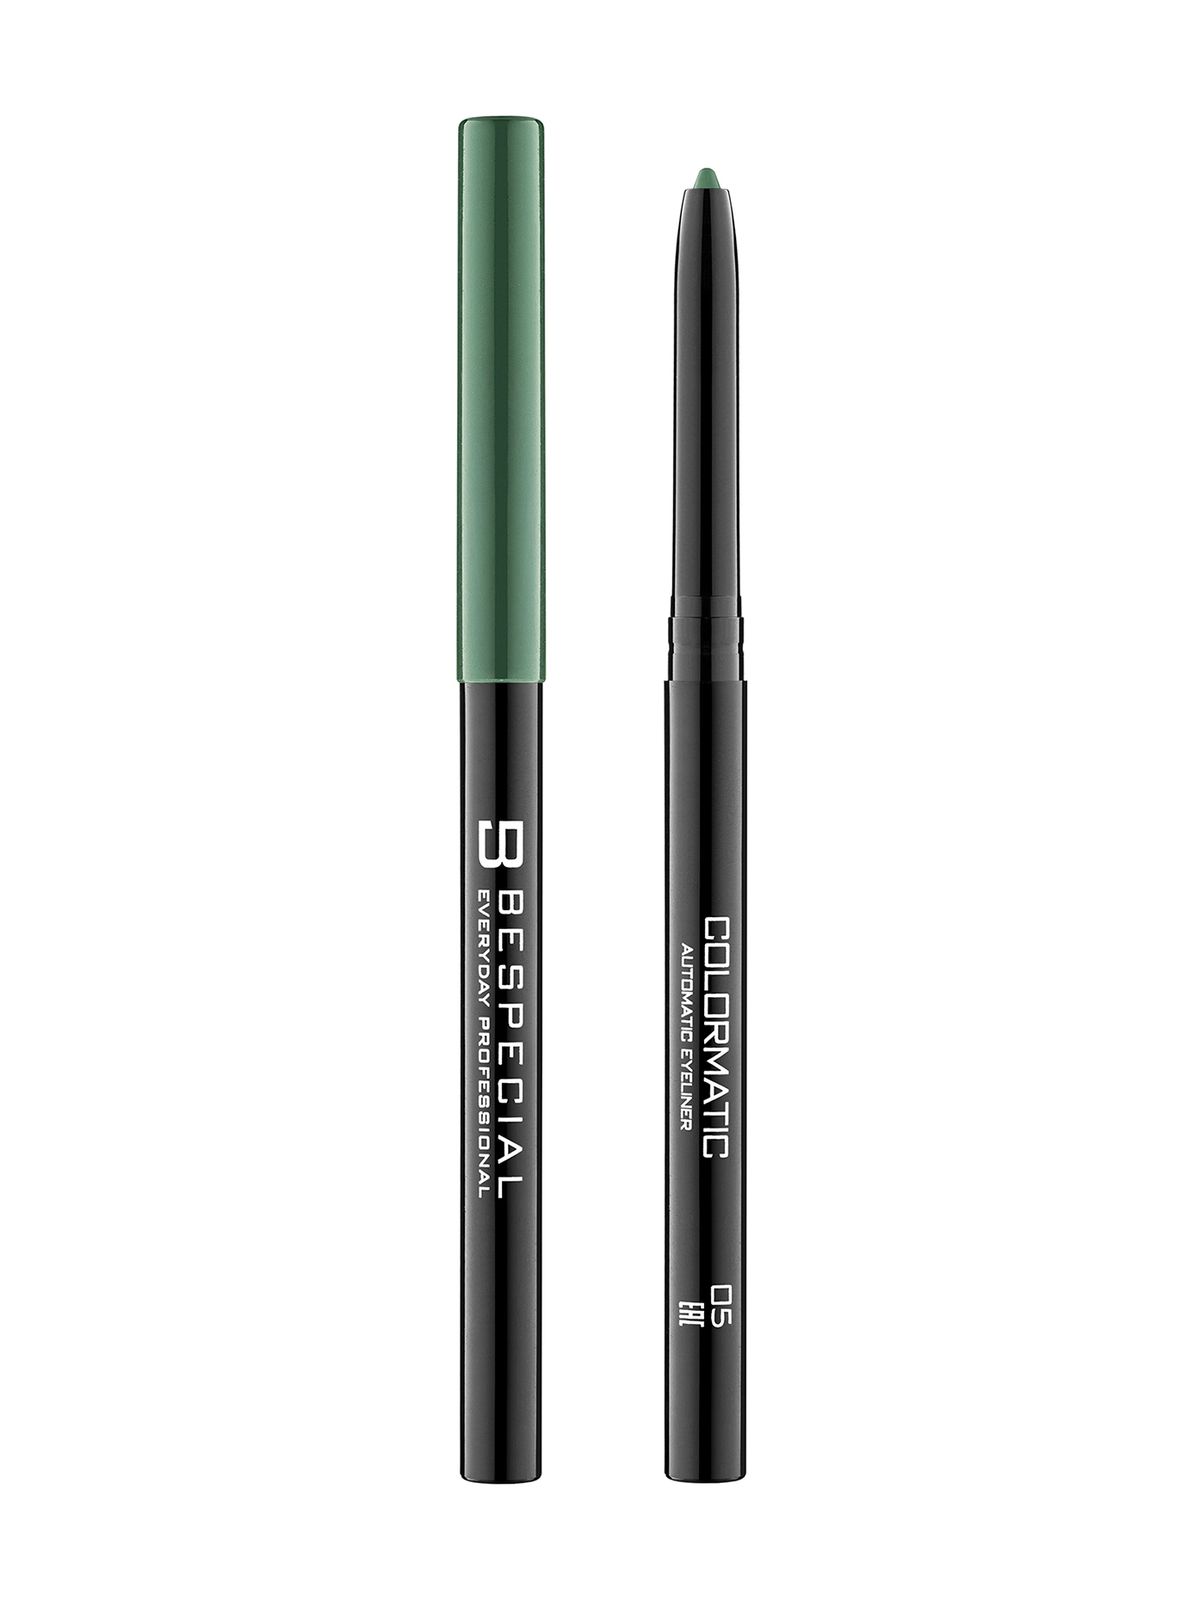 Механический карандаш для глаз Bespecial Colormatic Eye Pencil карандаш для глаз influence beauty spectrum автоматический тон 11